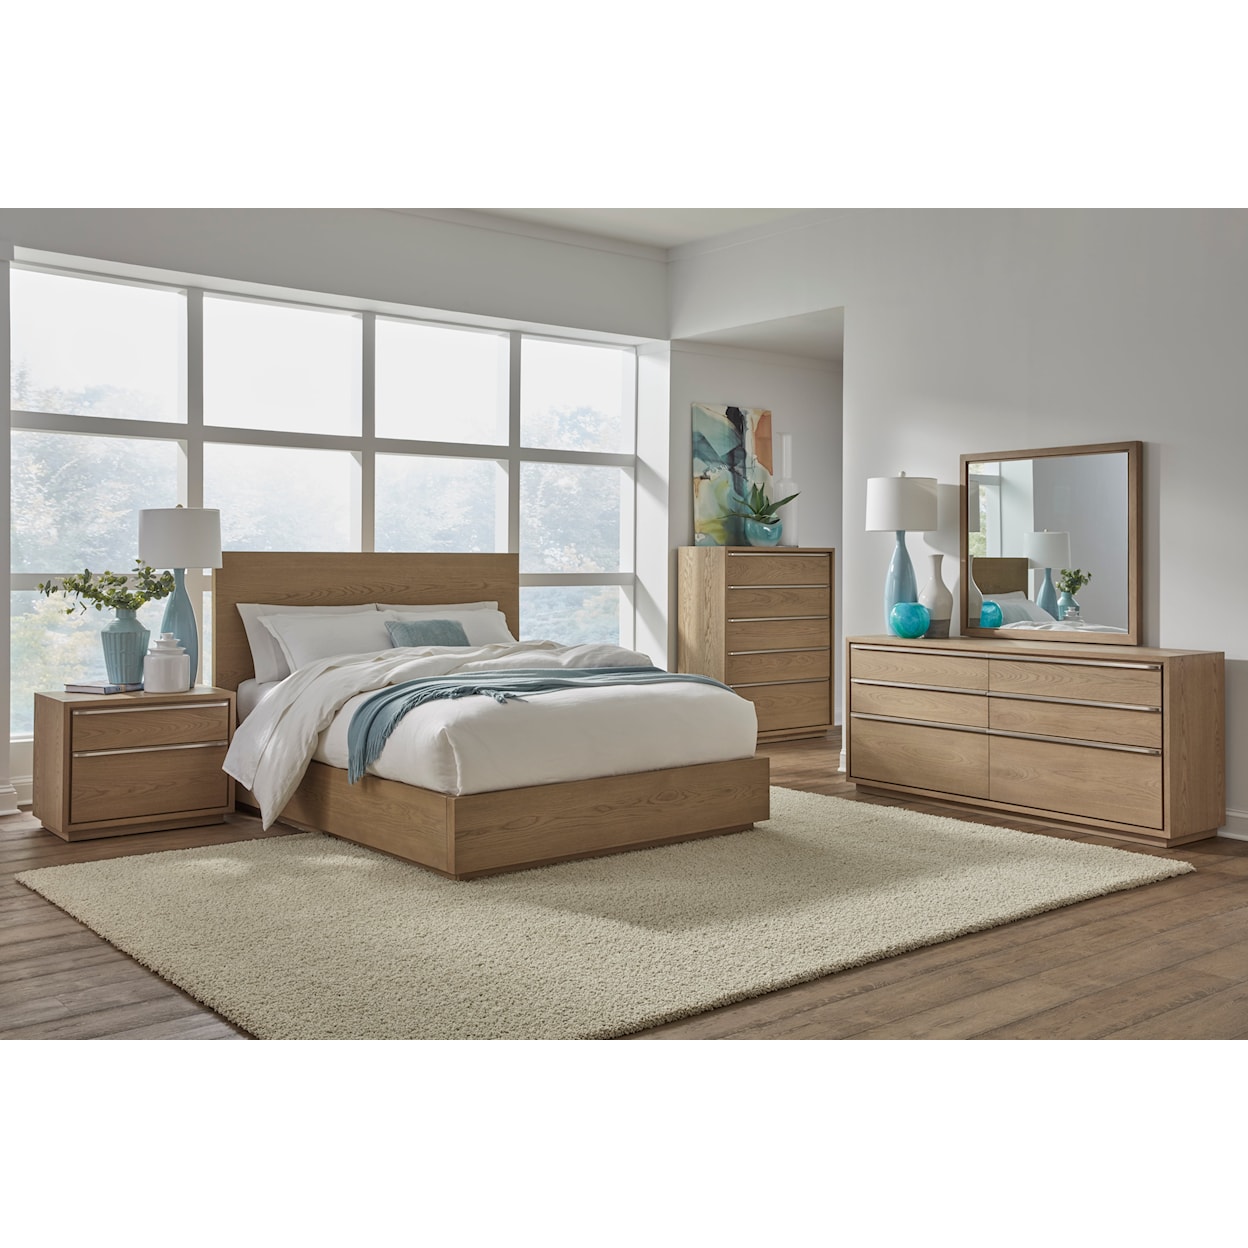 Modus International One 6 Piece Queen Bedroom Set with Dresser